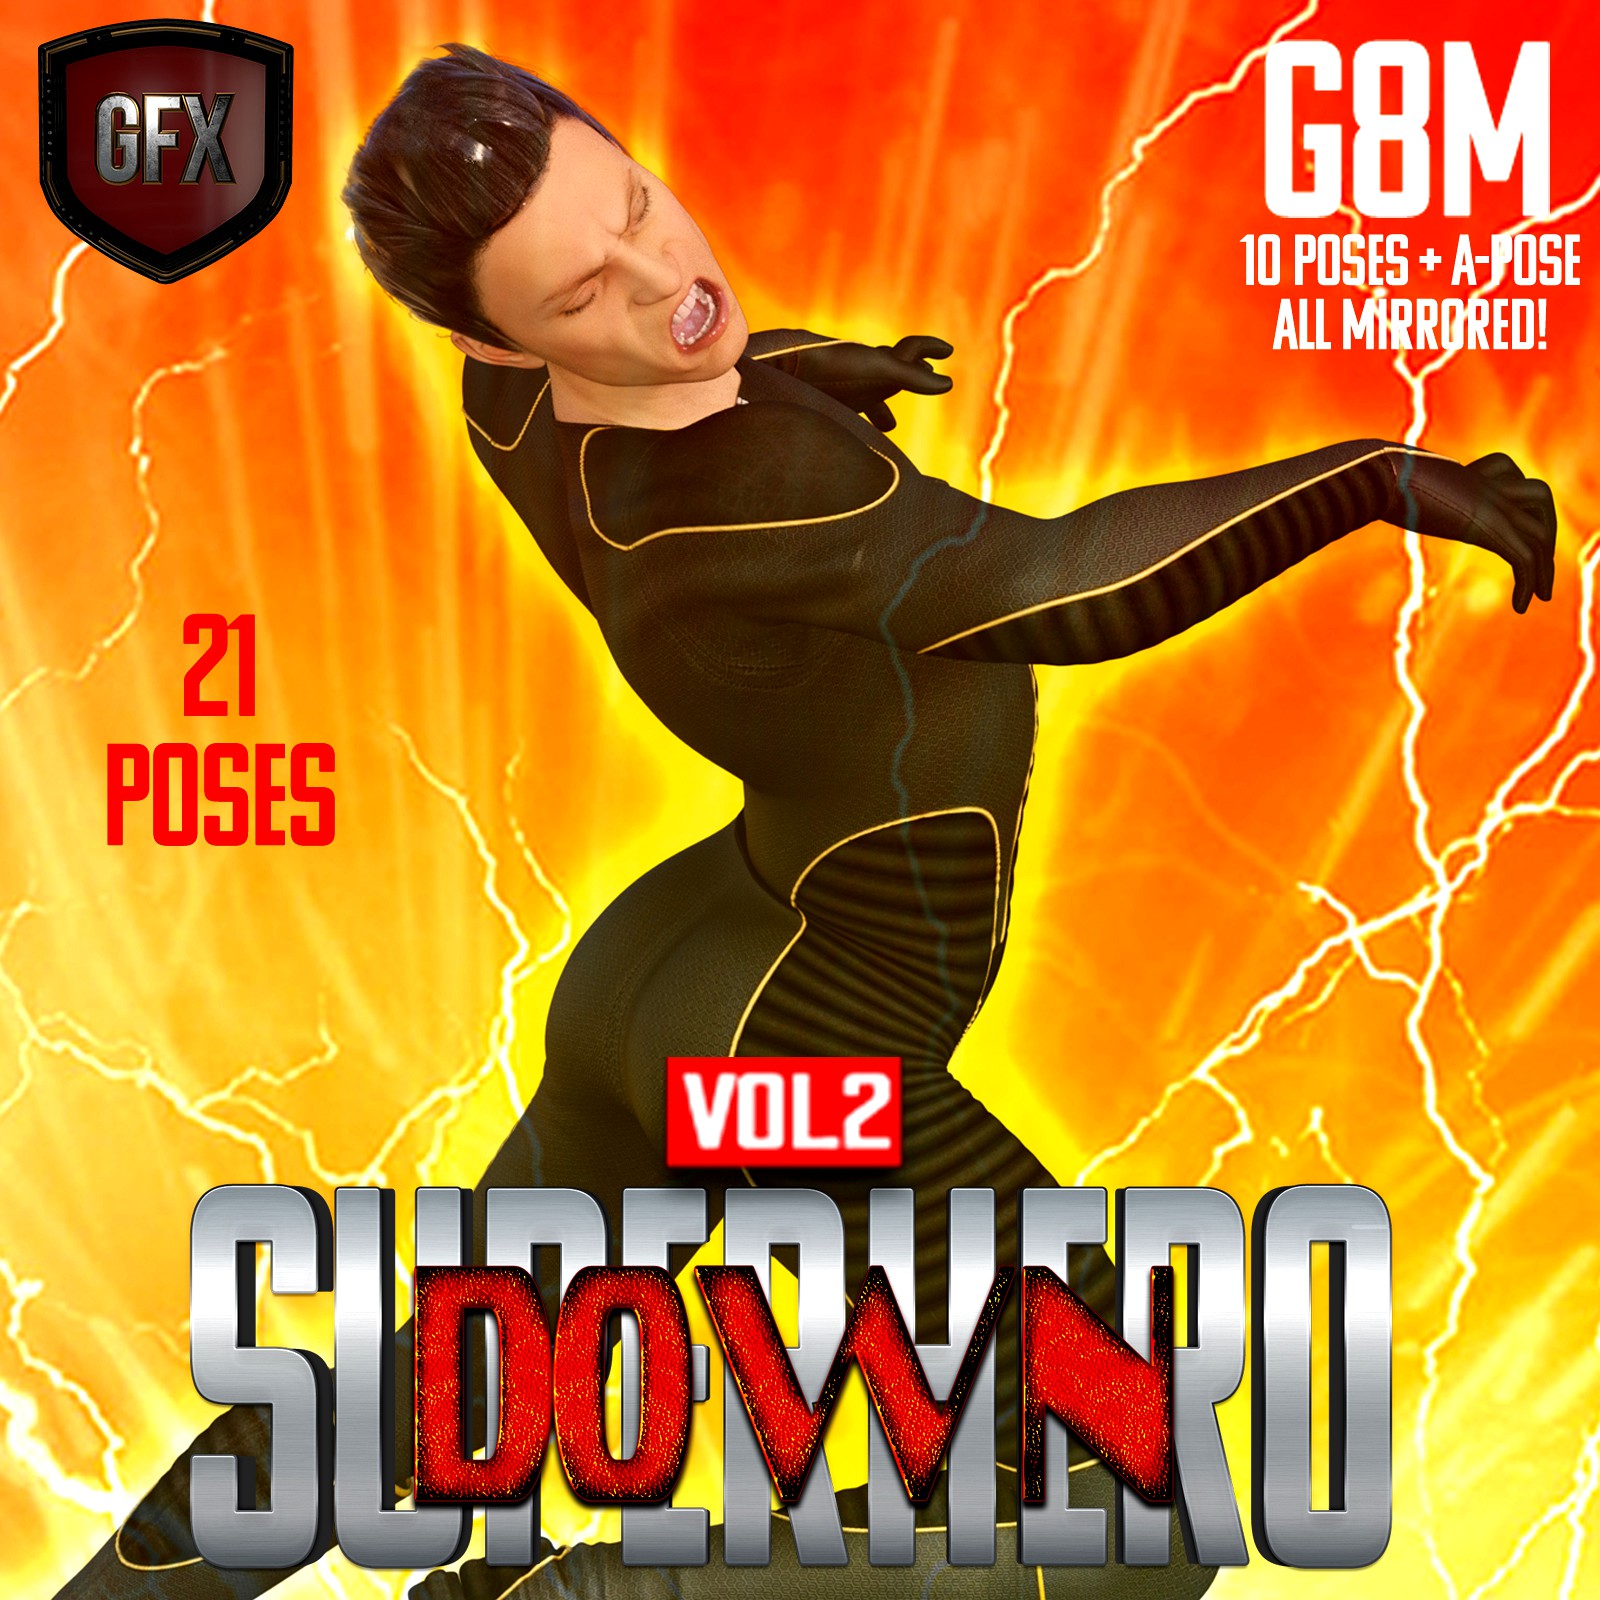 SuperHero Down for G8M Volume 2